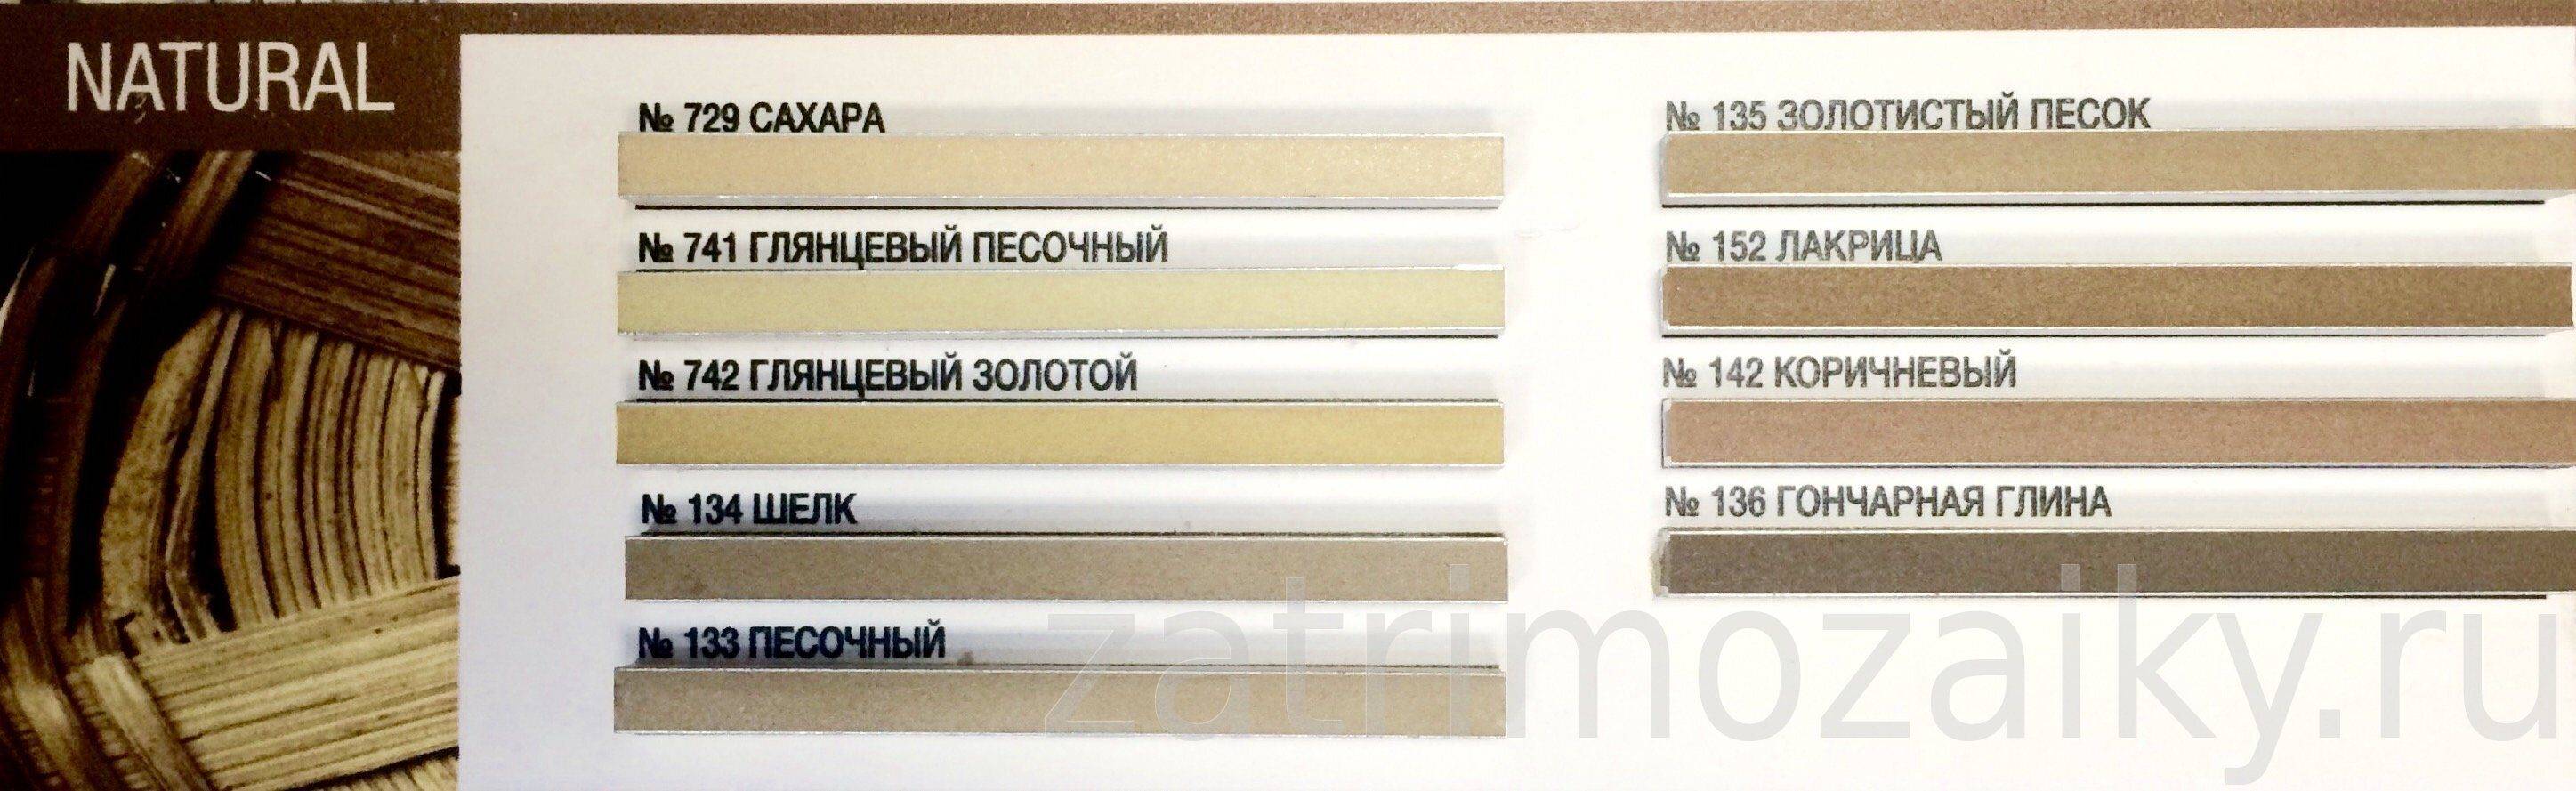 Двухкомпонентная, эпоксидная затирка для плитки: как выбрать, инструкция – ремонт своими руками на m-stone.ru